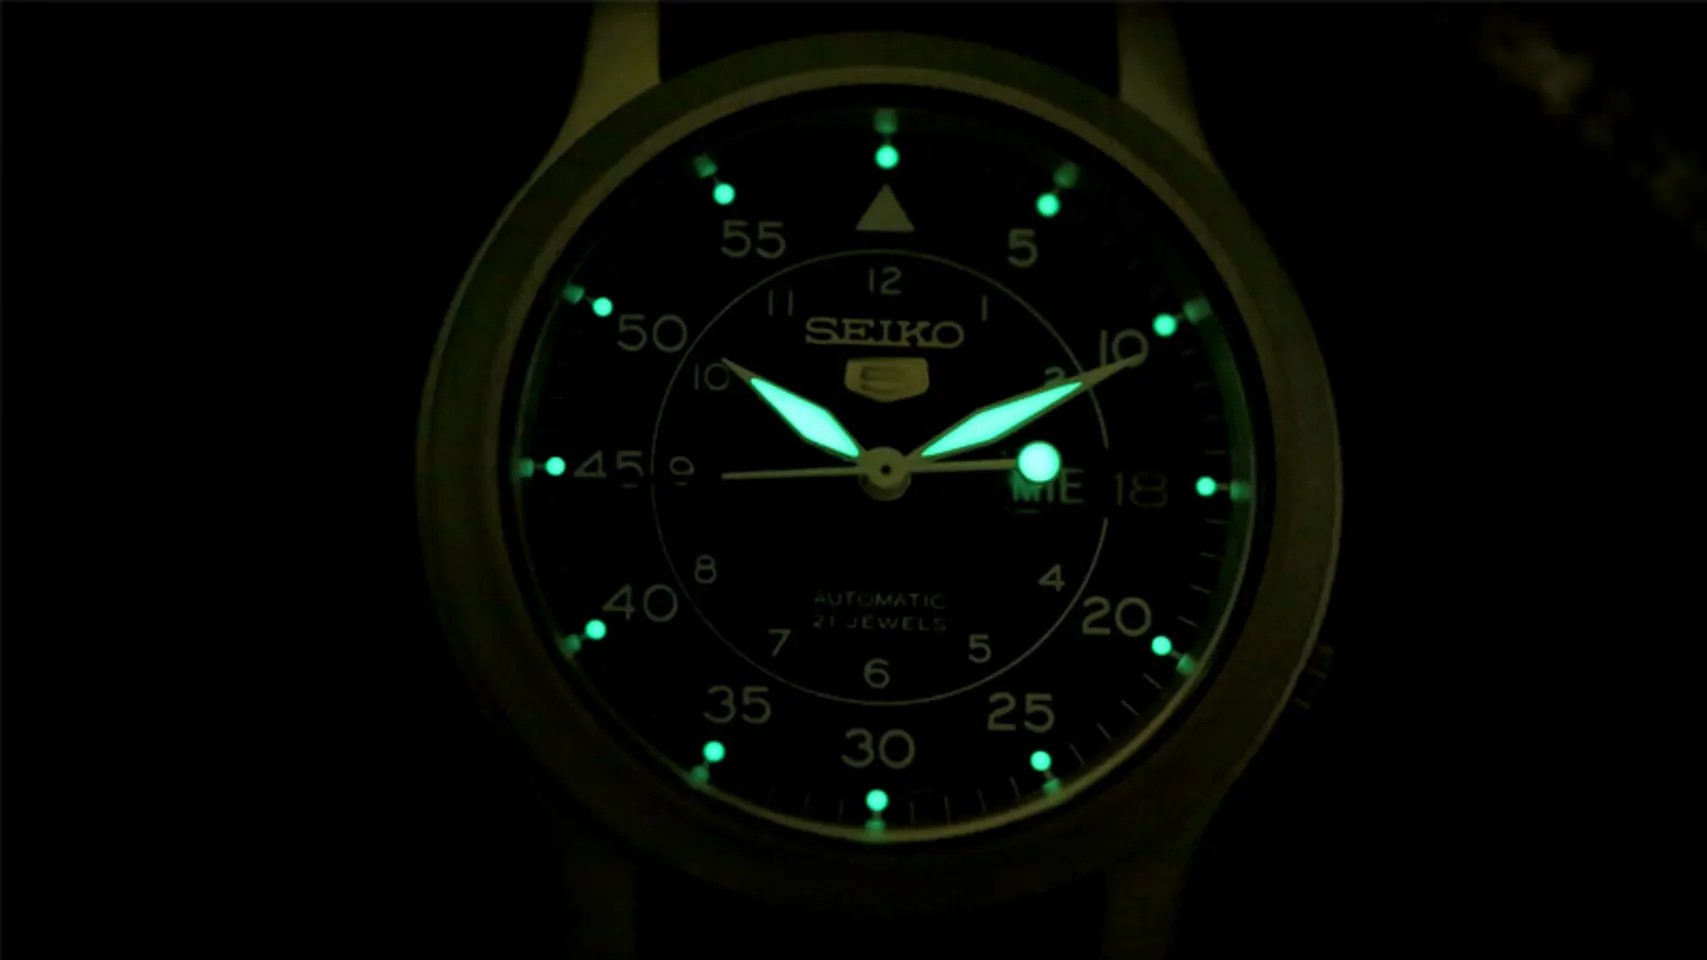 Đồng hồ Seiko SNK809K1 phát quang khi trong bóng tối